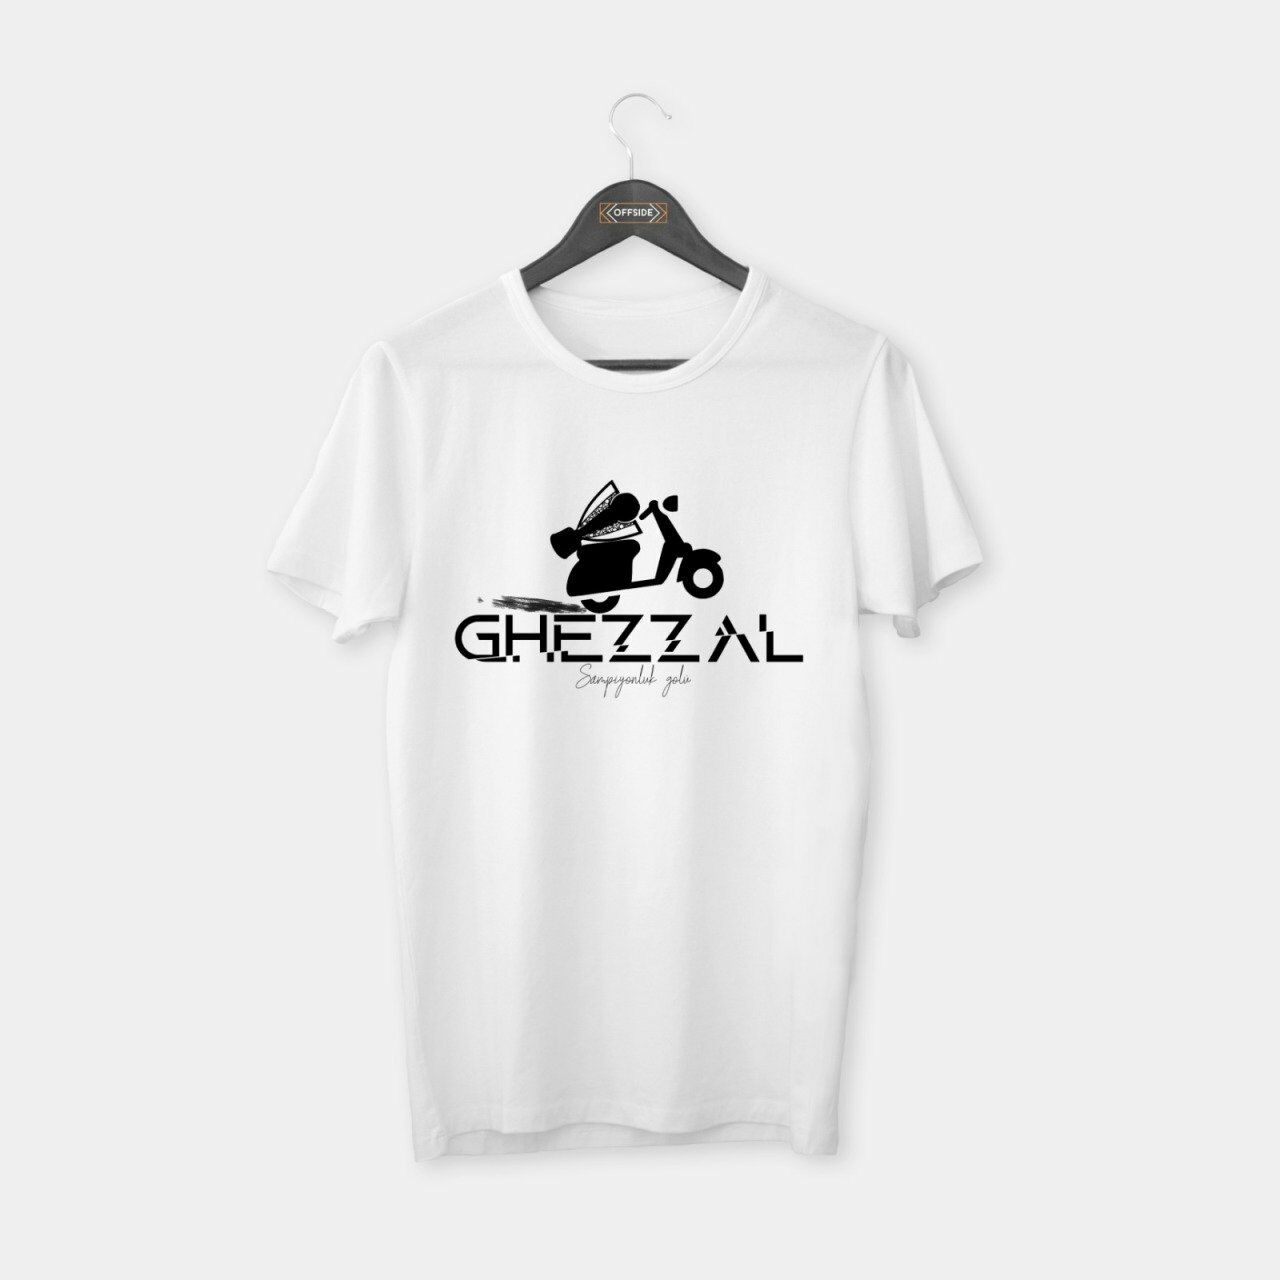 Ghezzal 'Şampiyonluk' T-shirt